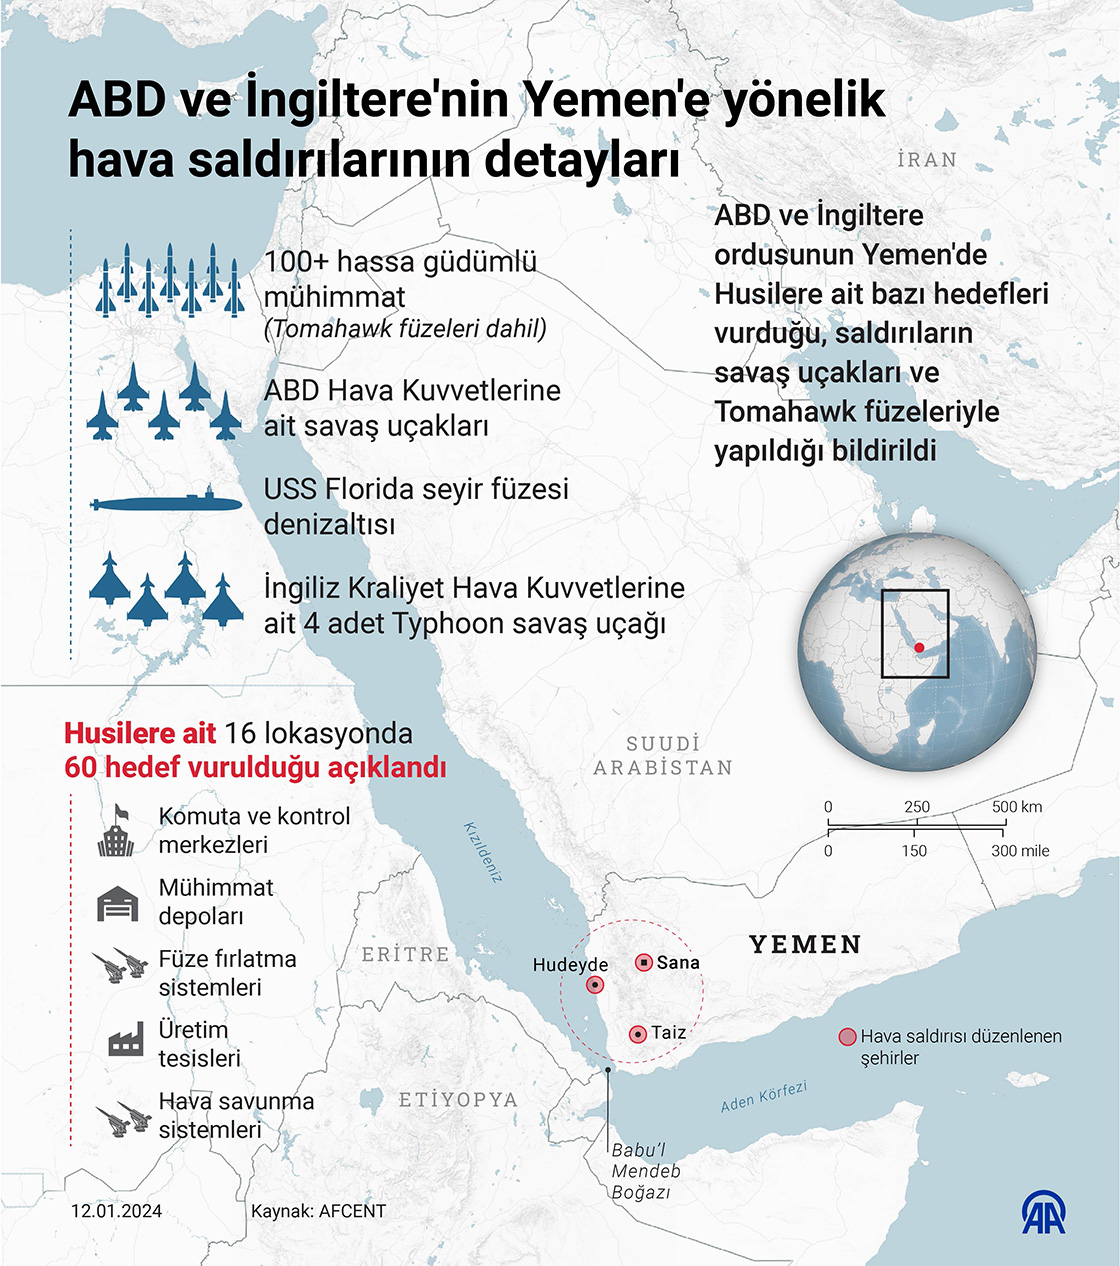 ABD ve İngiltere'nin Yemen'e yönelik hava saldırılarının detayları